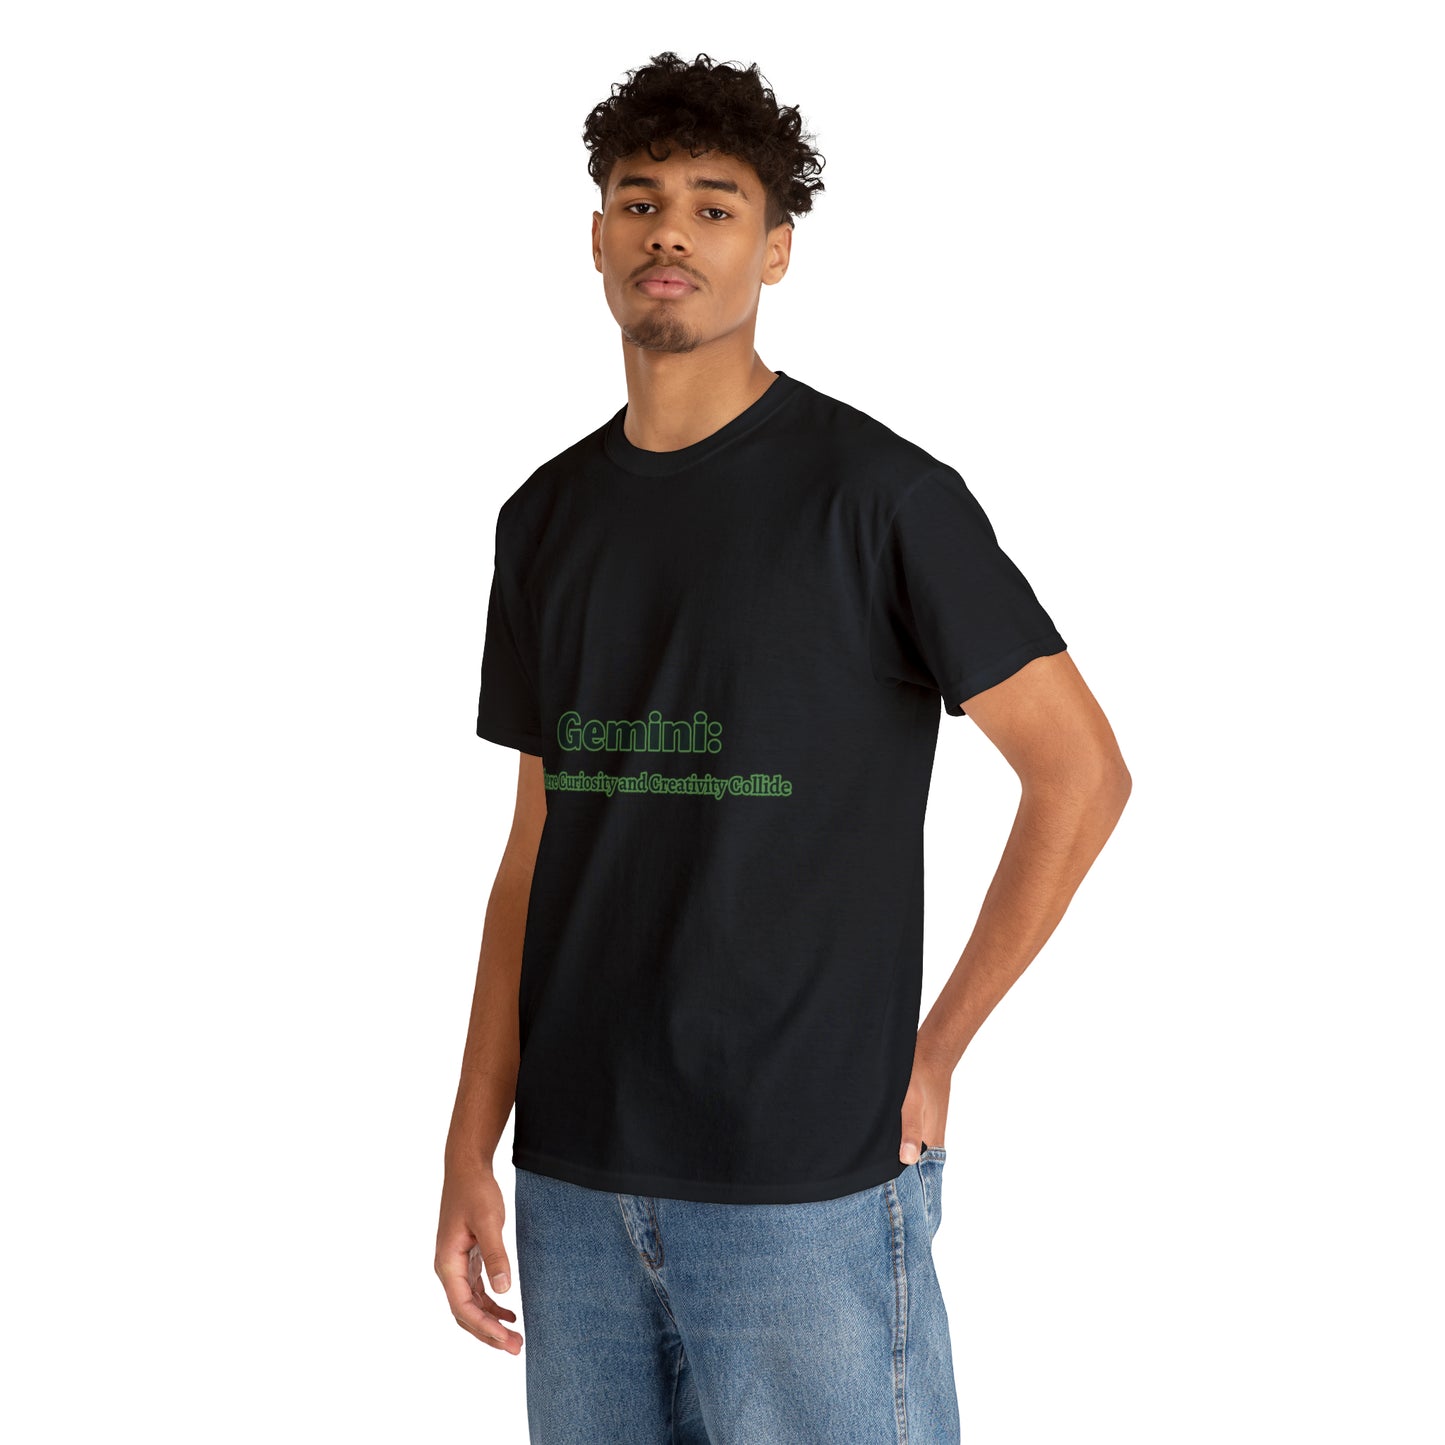 Gemini T-shirt - 4